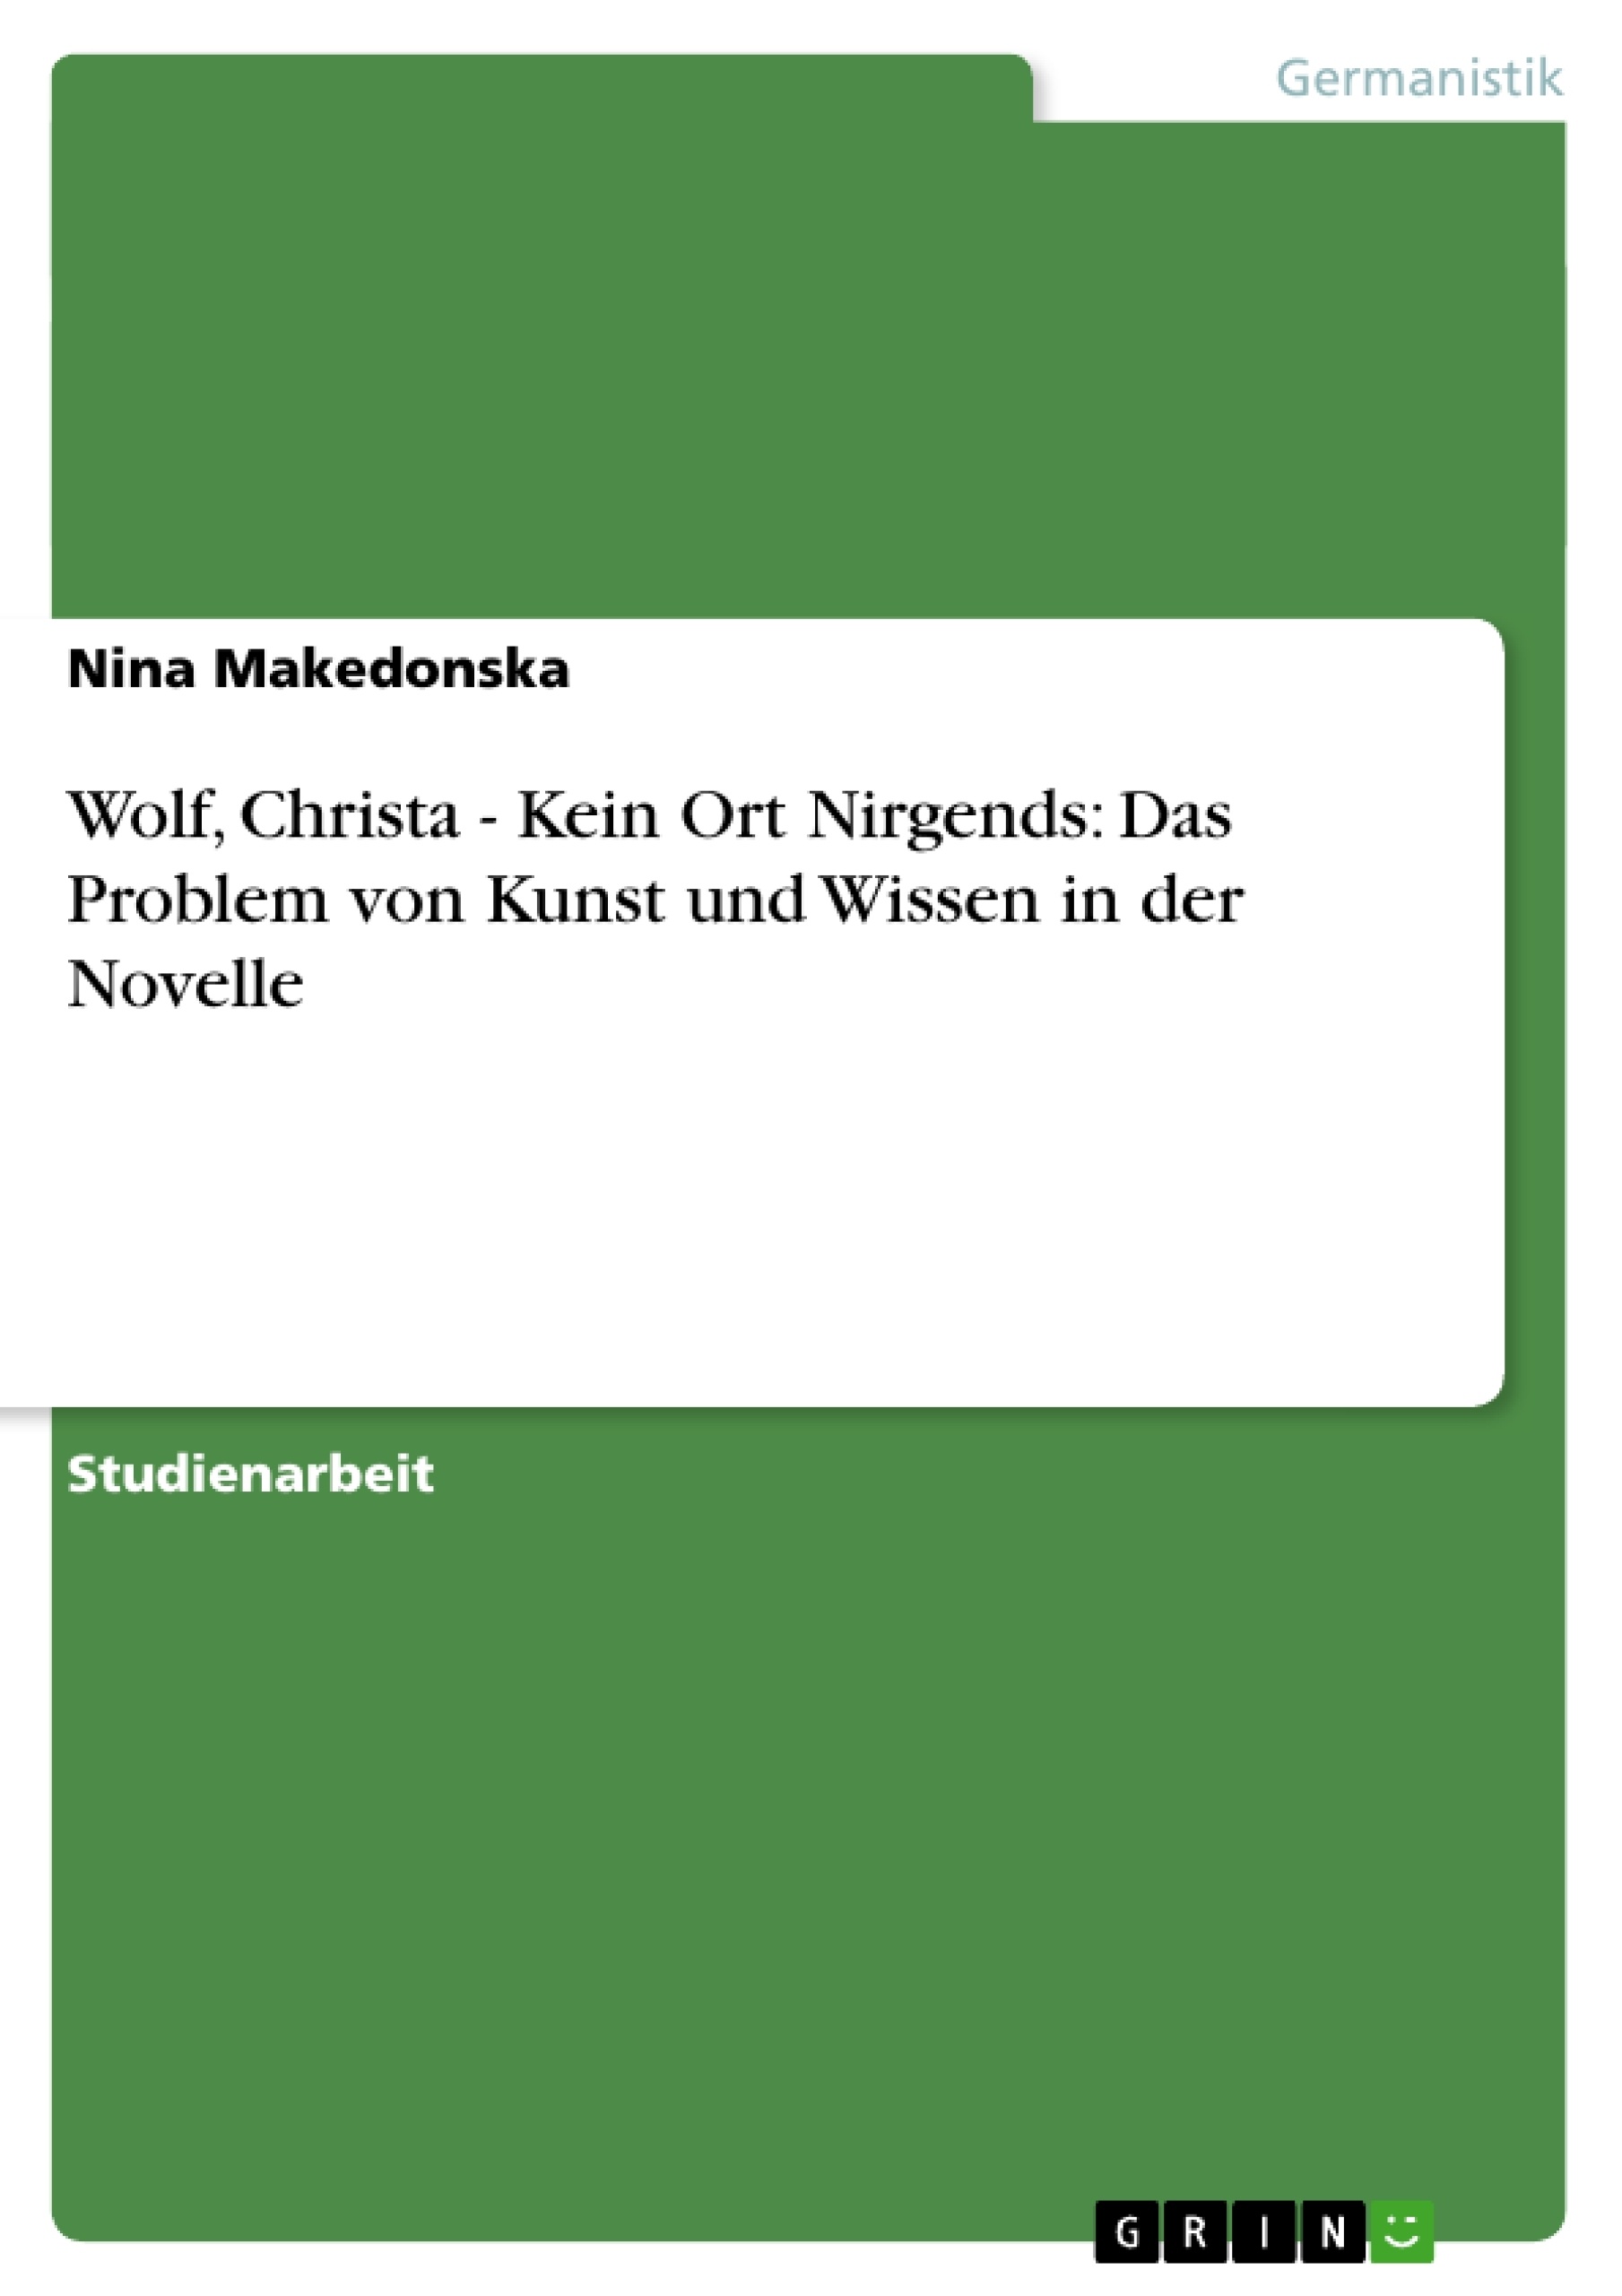 Título: Wolf, Christa - Kein Ort Nirgends: Das Problem von Kunst und Wissen in der Novelle